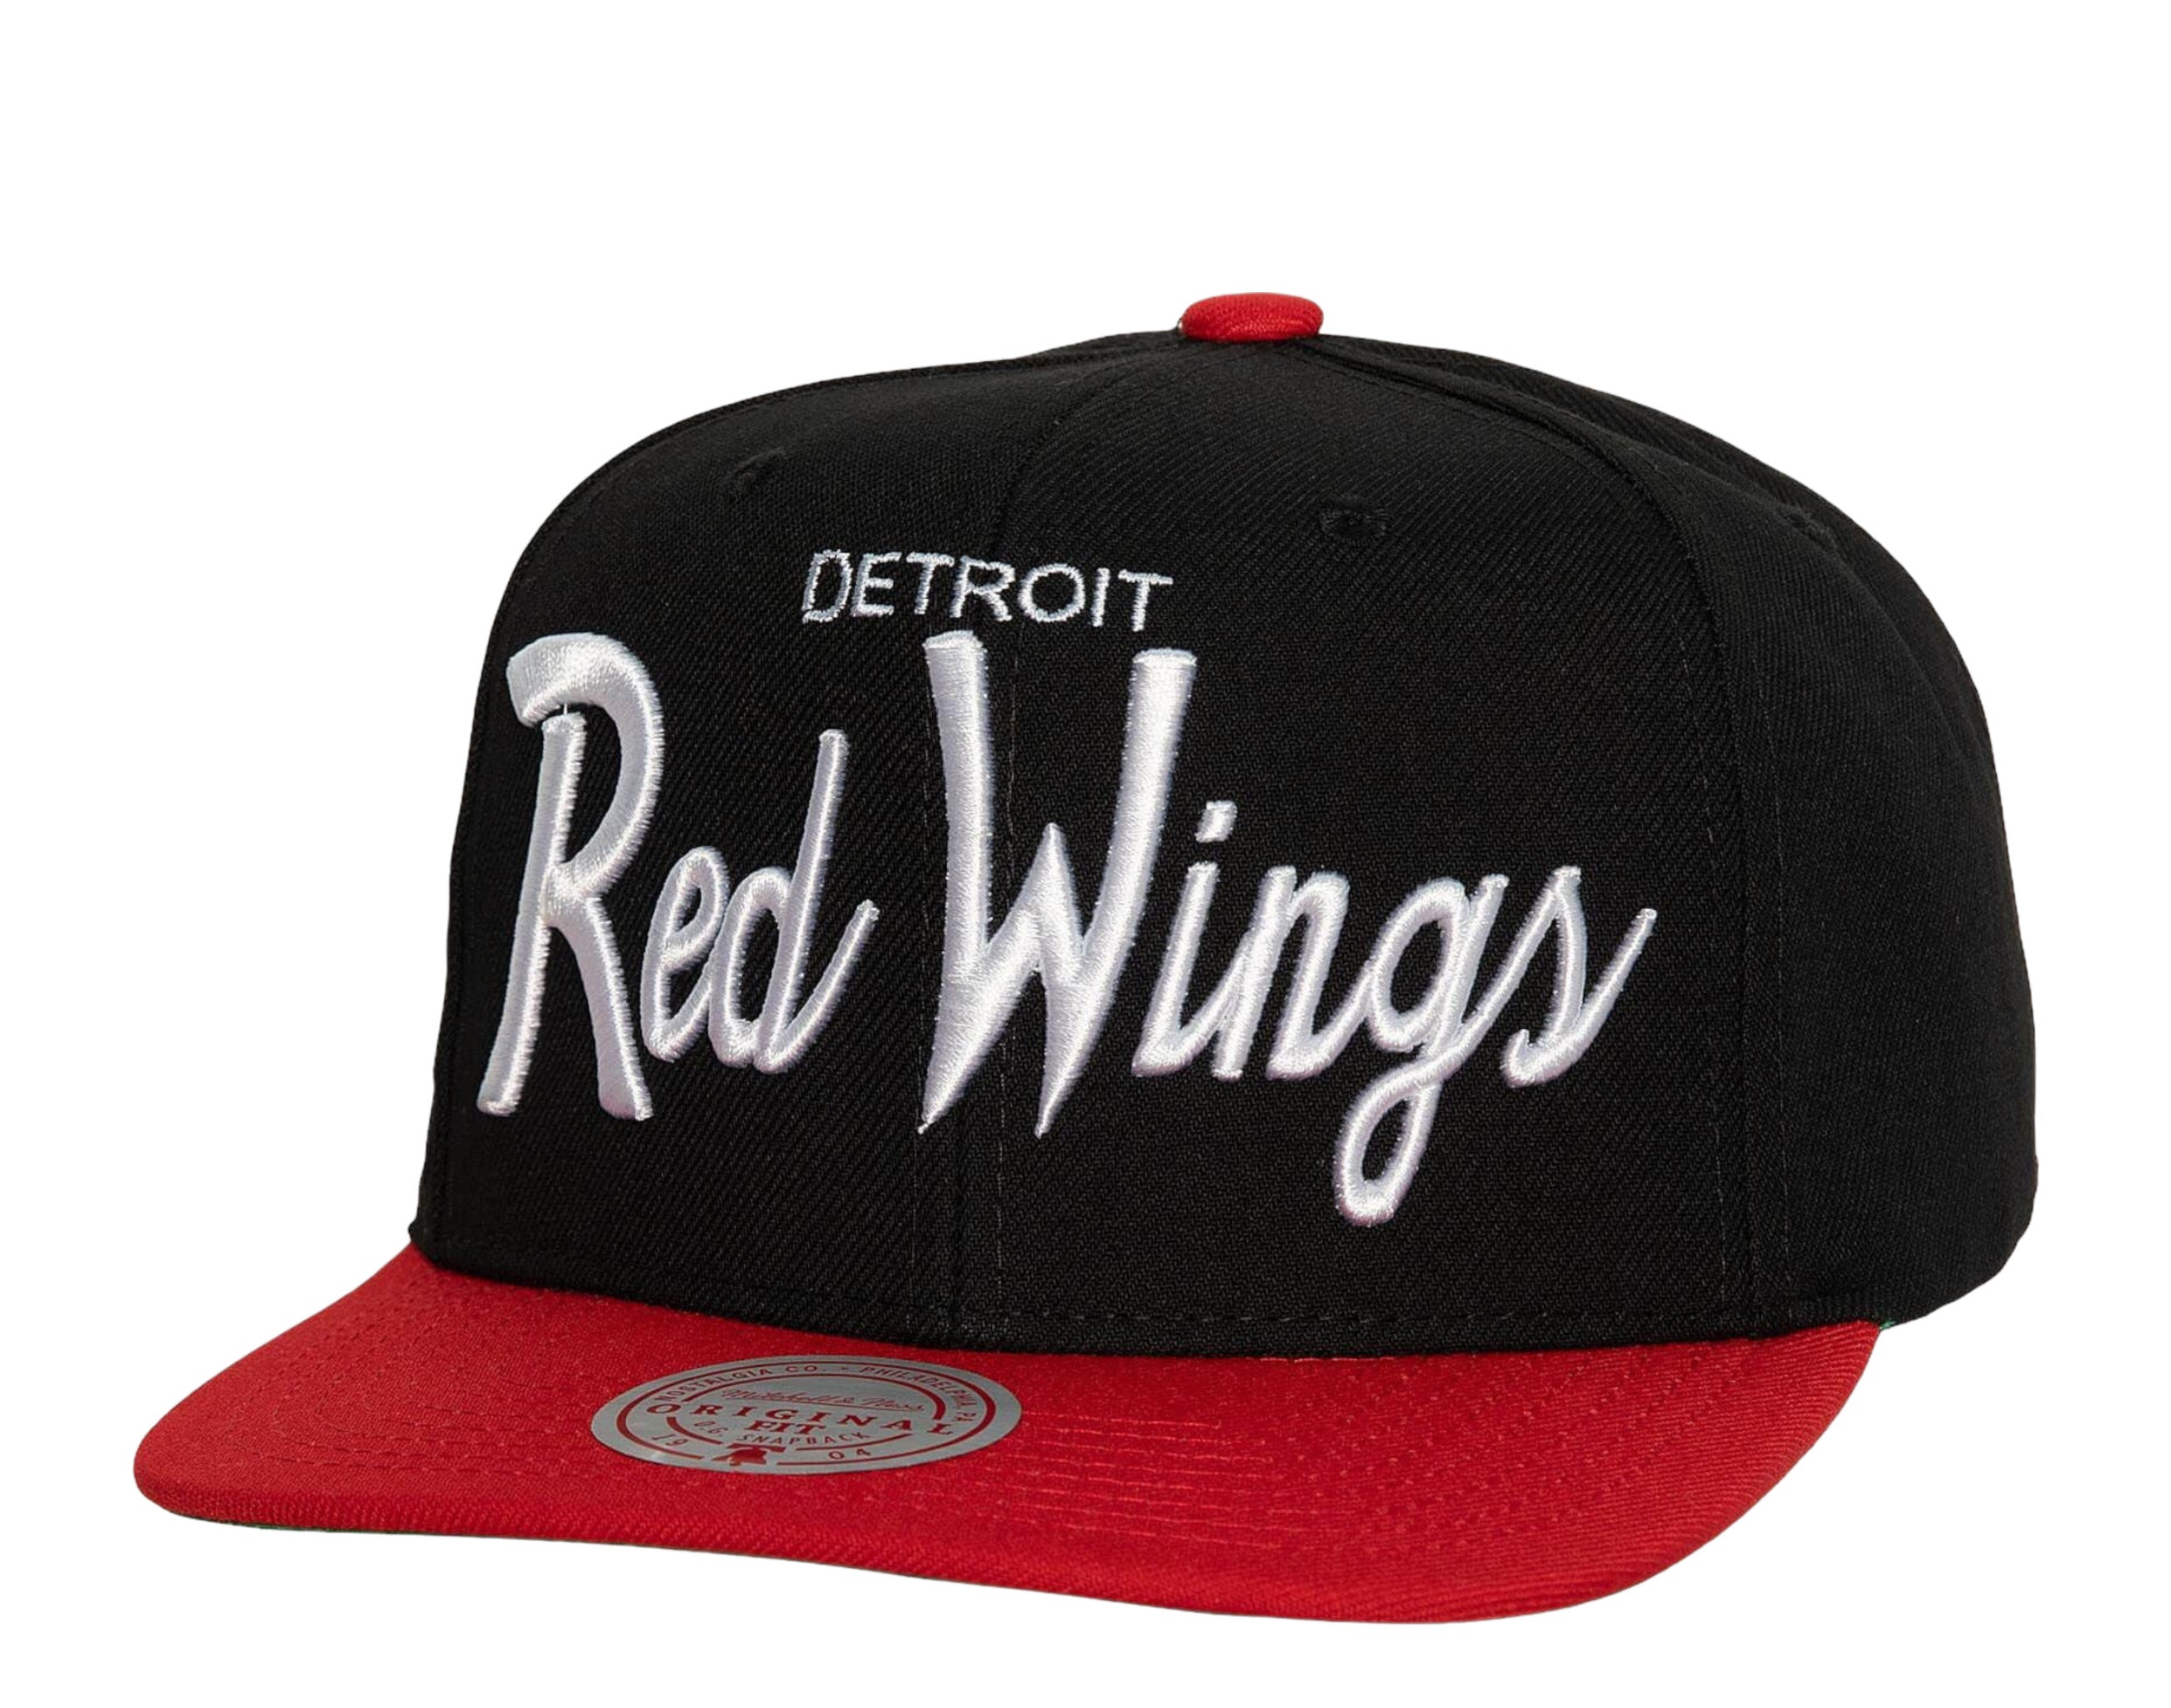 Vintage Detroit Red Wings Snapback